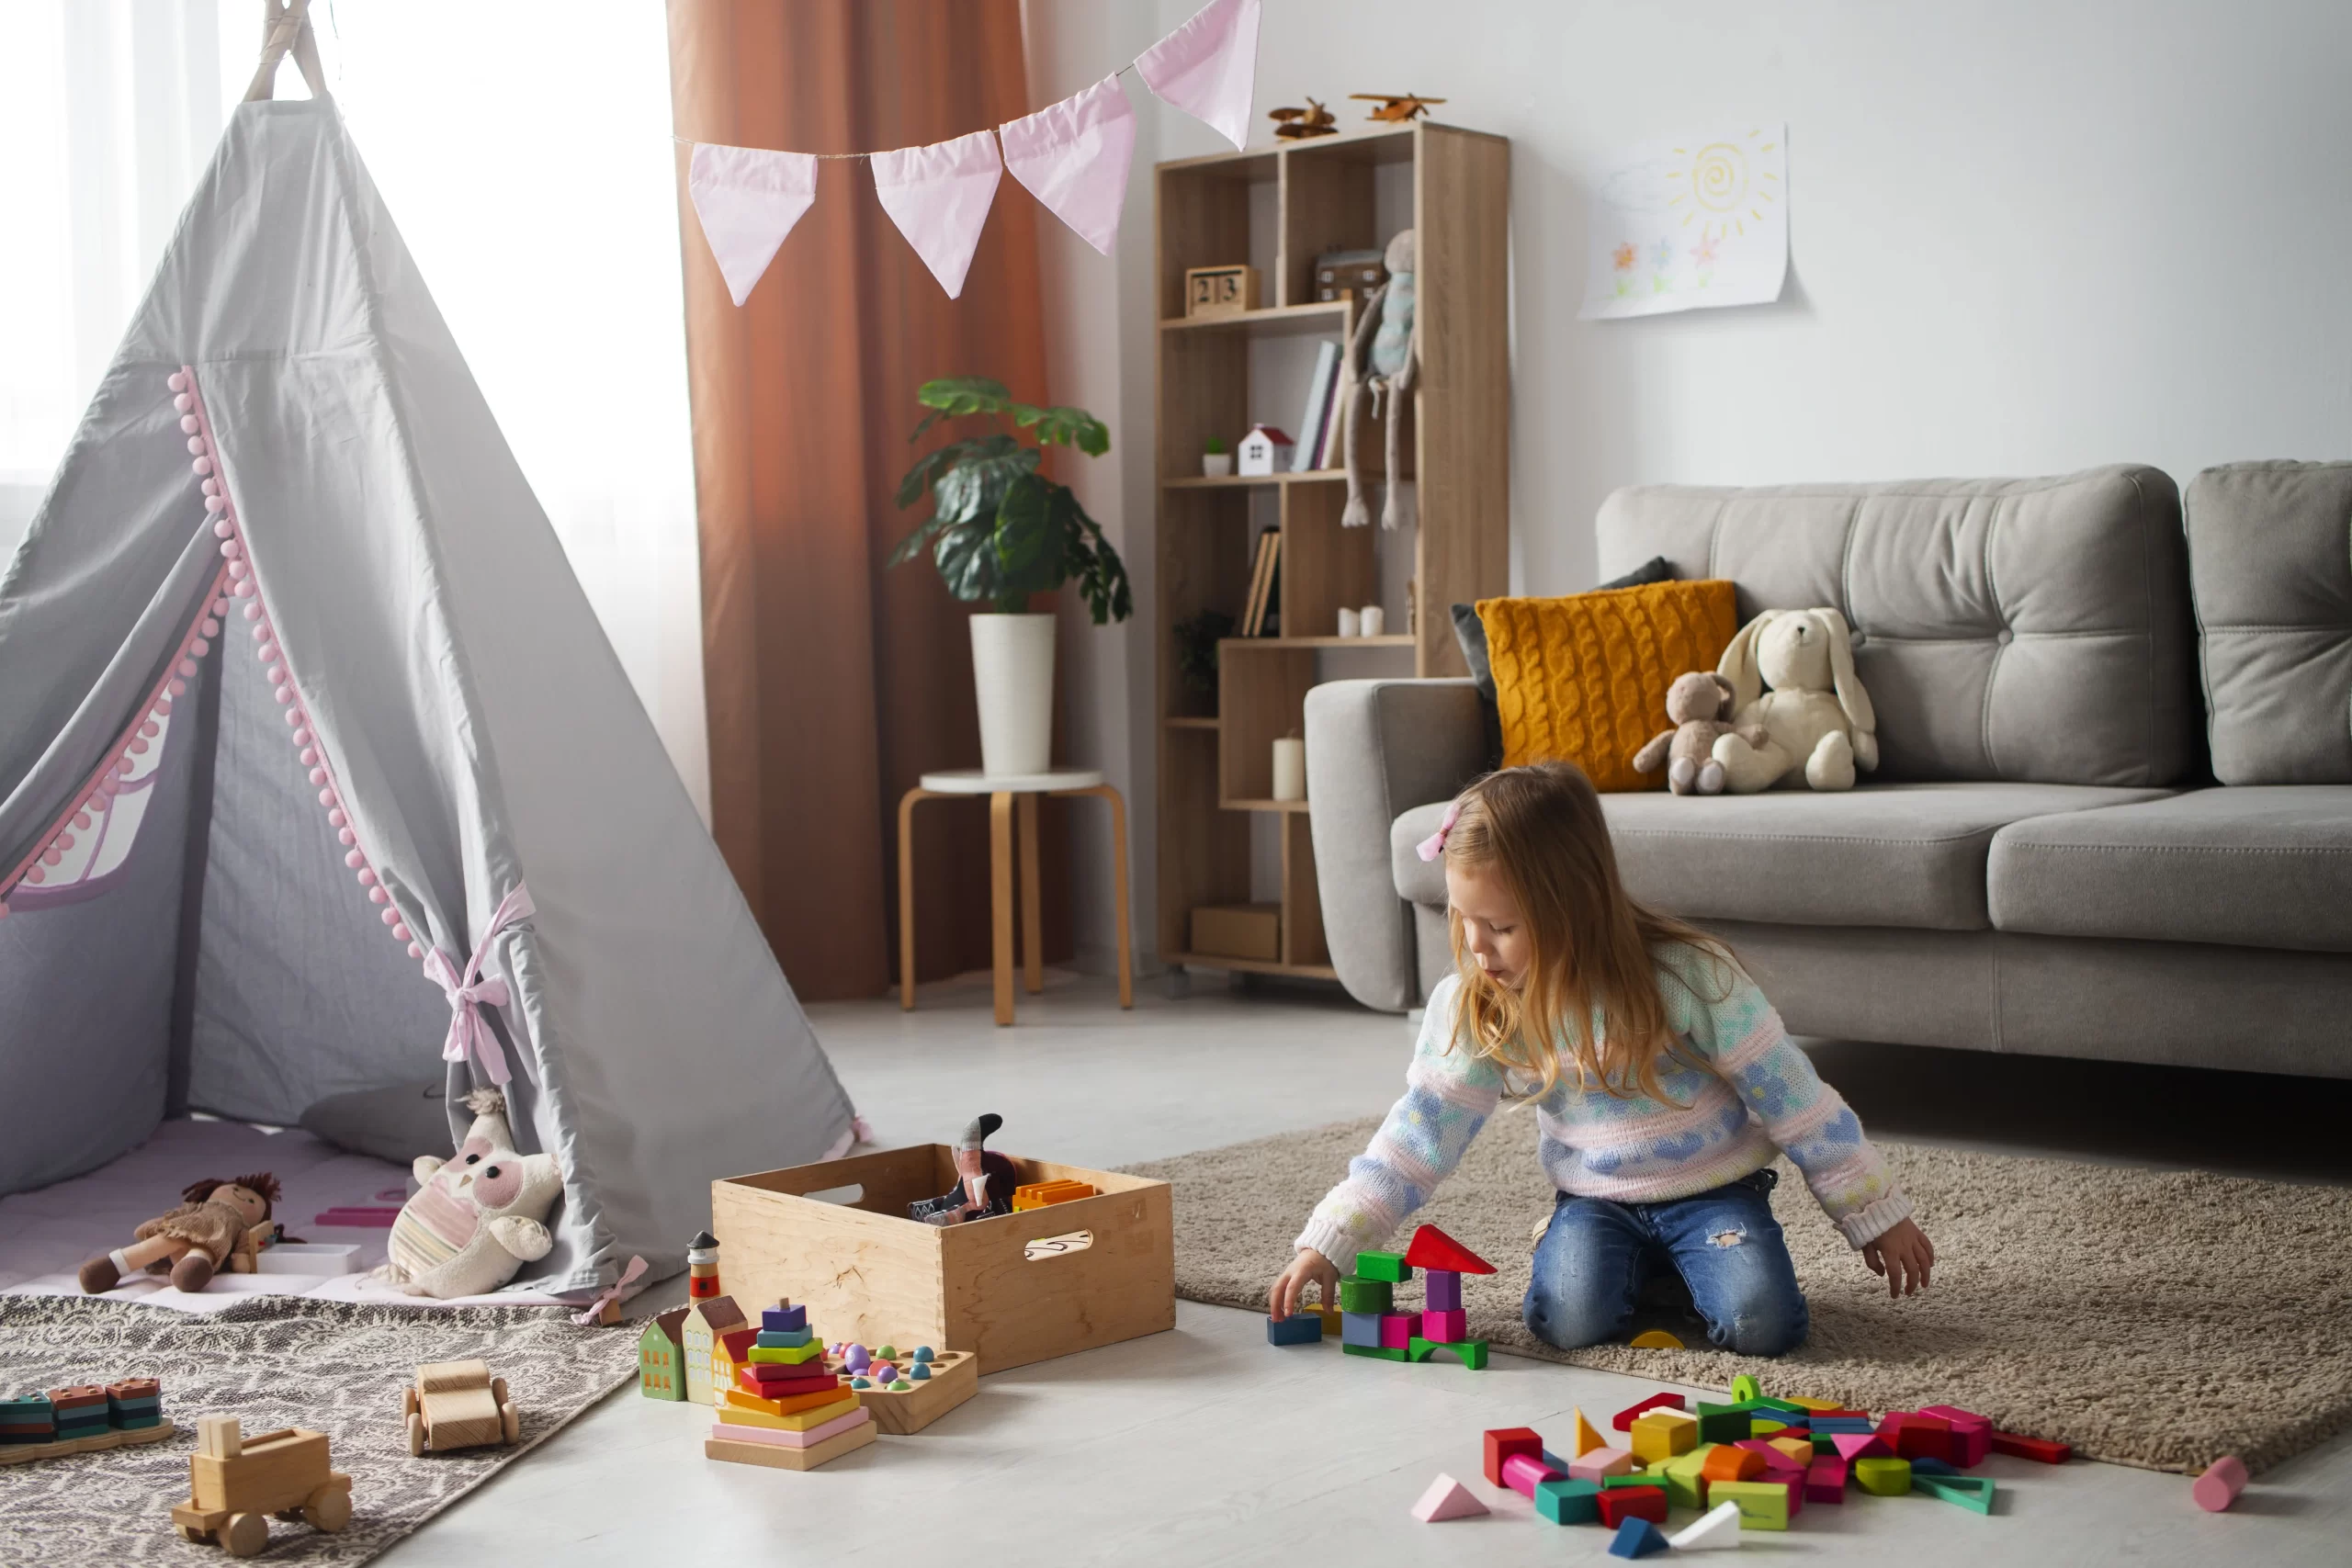 دختری که در اتاقش است و وسایل بازیش بر روی زمین گذاشته است و مبل راحتی در پشتش قرار دارد و در کنار بچه چادر نیز قرار دارد